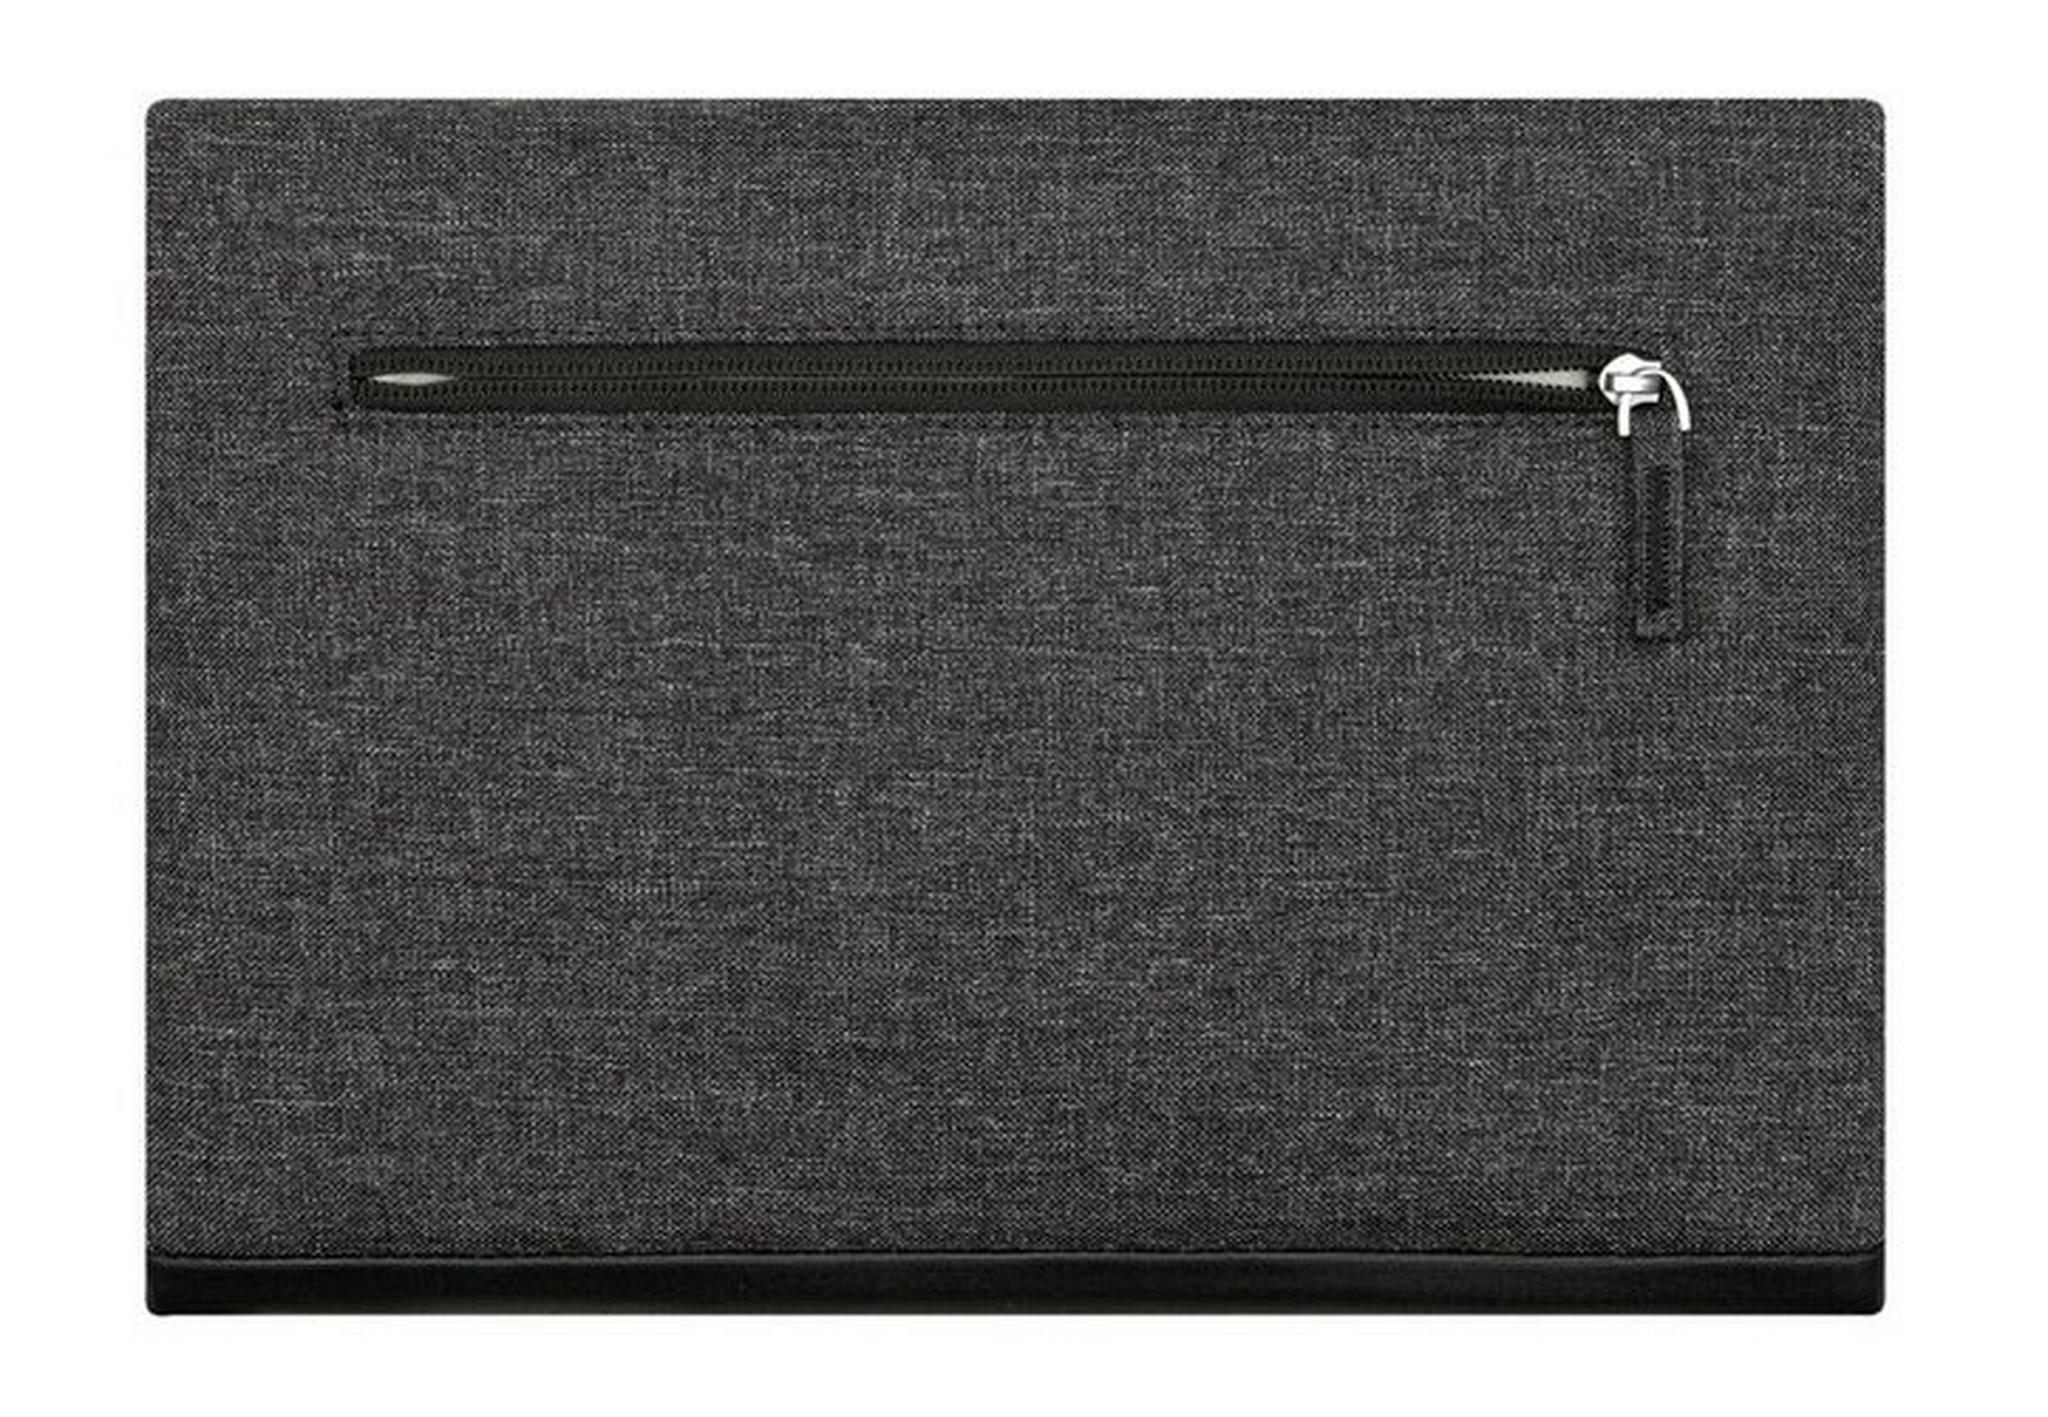 Rivacase 8802 MacBook Pro/MacBook Air 13 Sleeve - Black